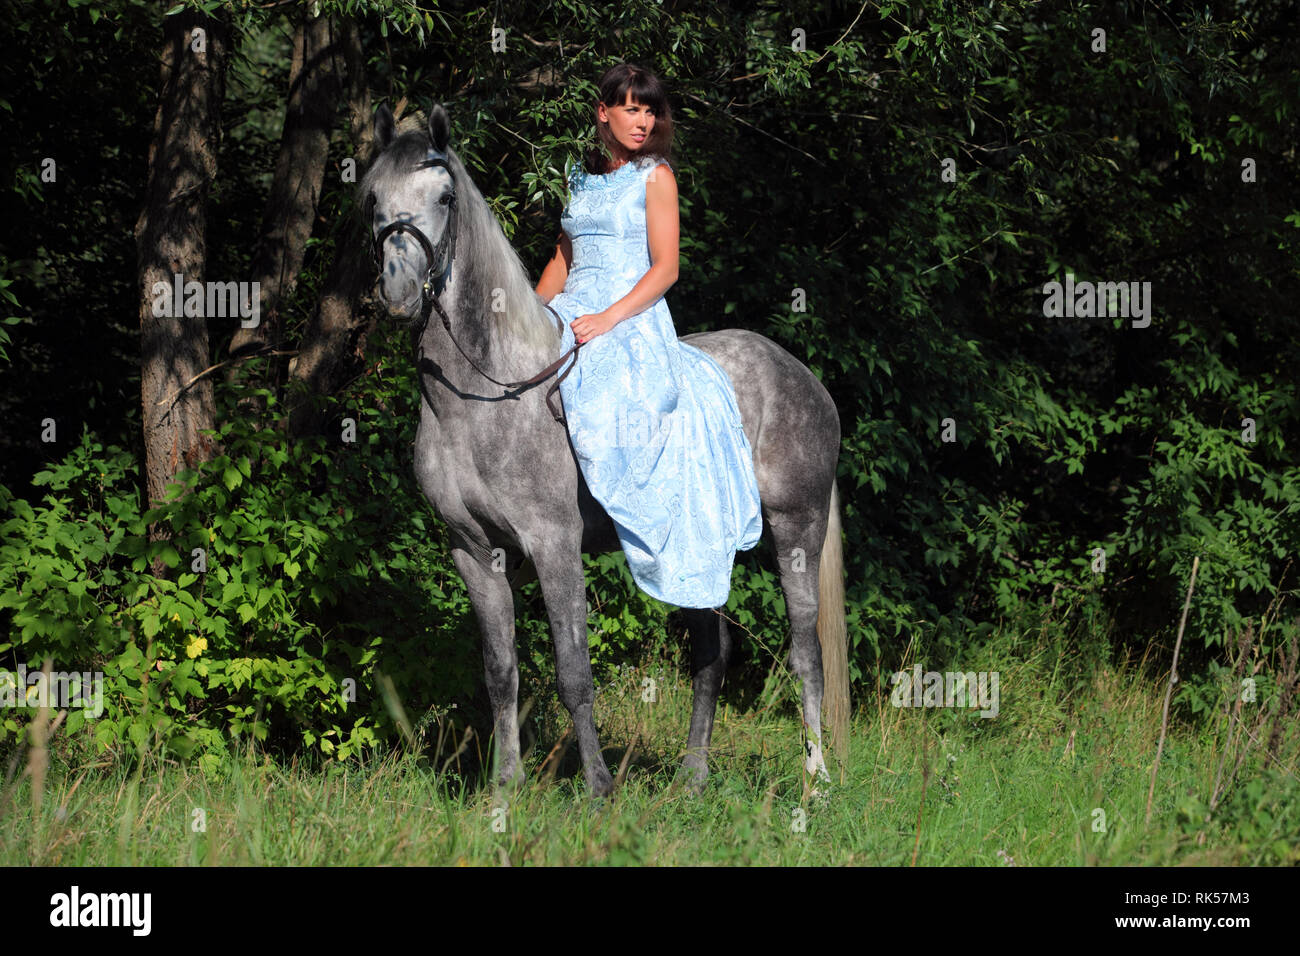 Schöne brünette Frau mit langen Haaren und blauen Kleid in den Wäldern mit dapple graues Pferd Stockfoto